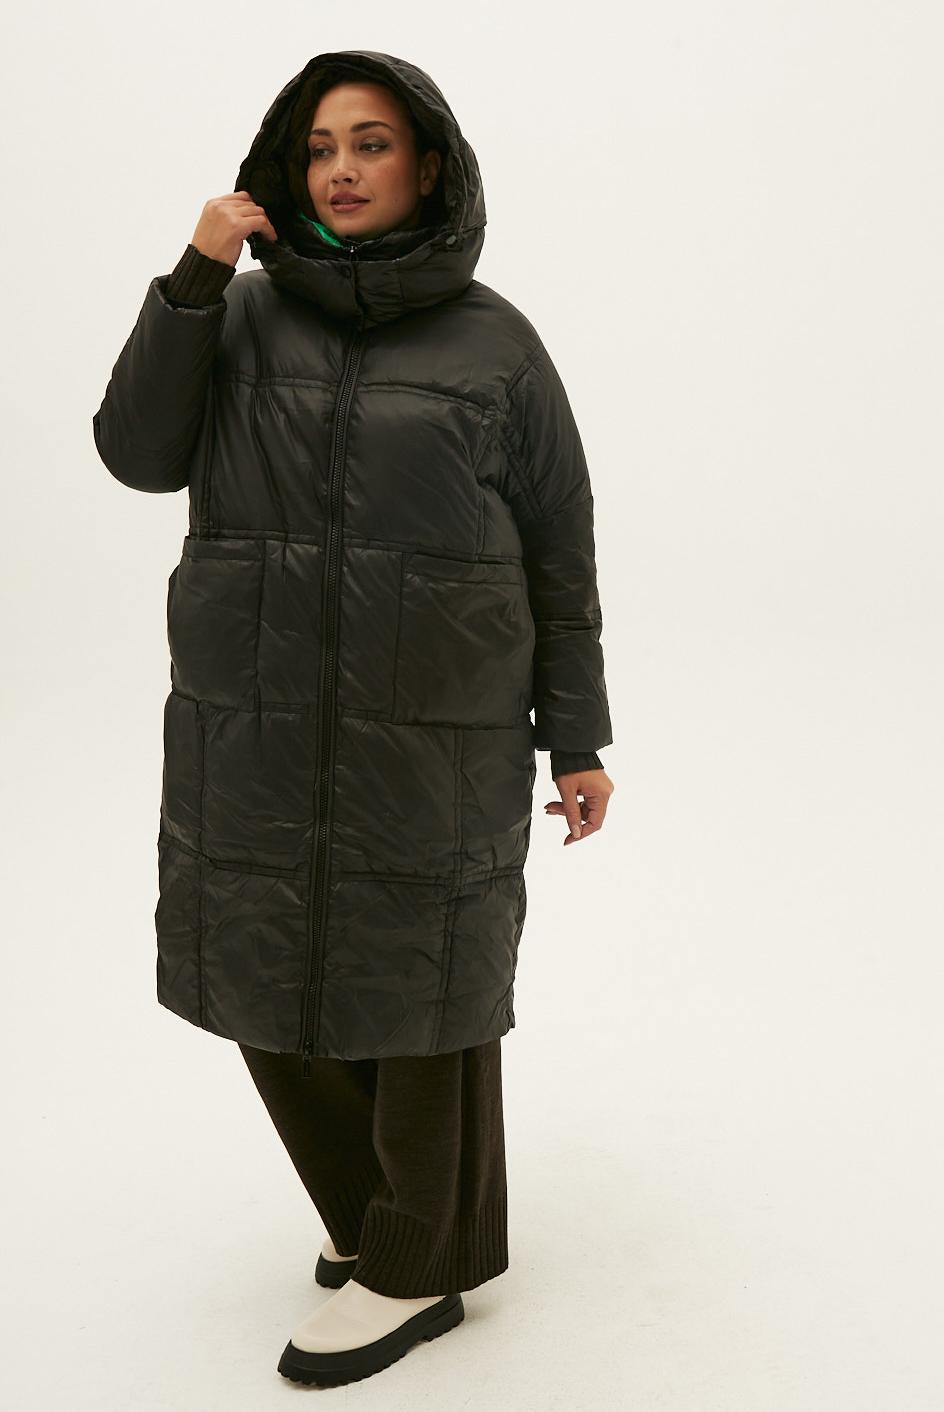 Пальто пуховик на зеленой подкладке большого размера для женщин плюс сайз заказать с доставкой 